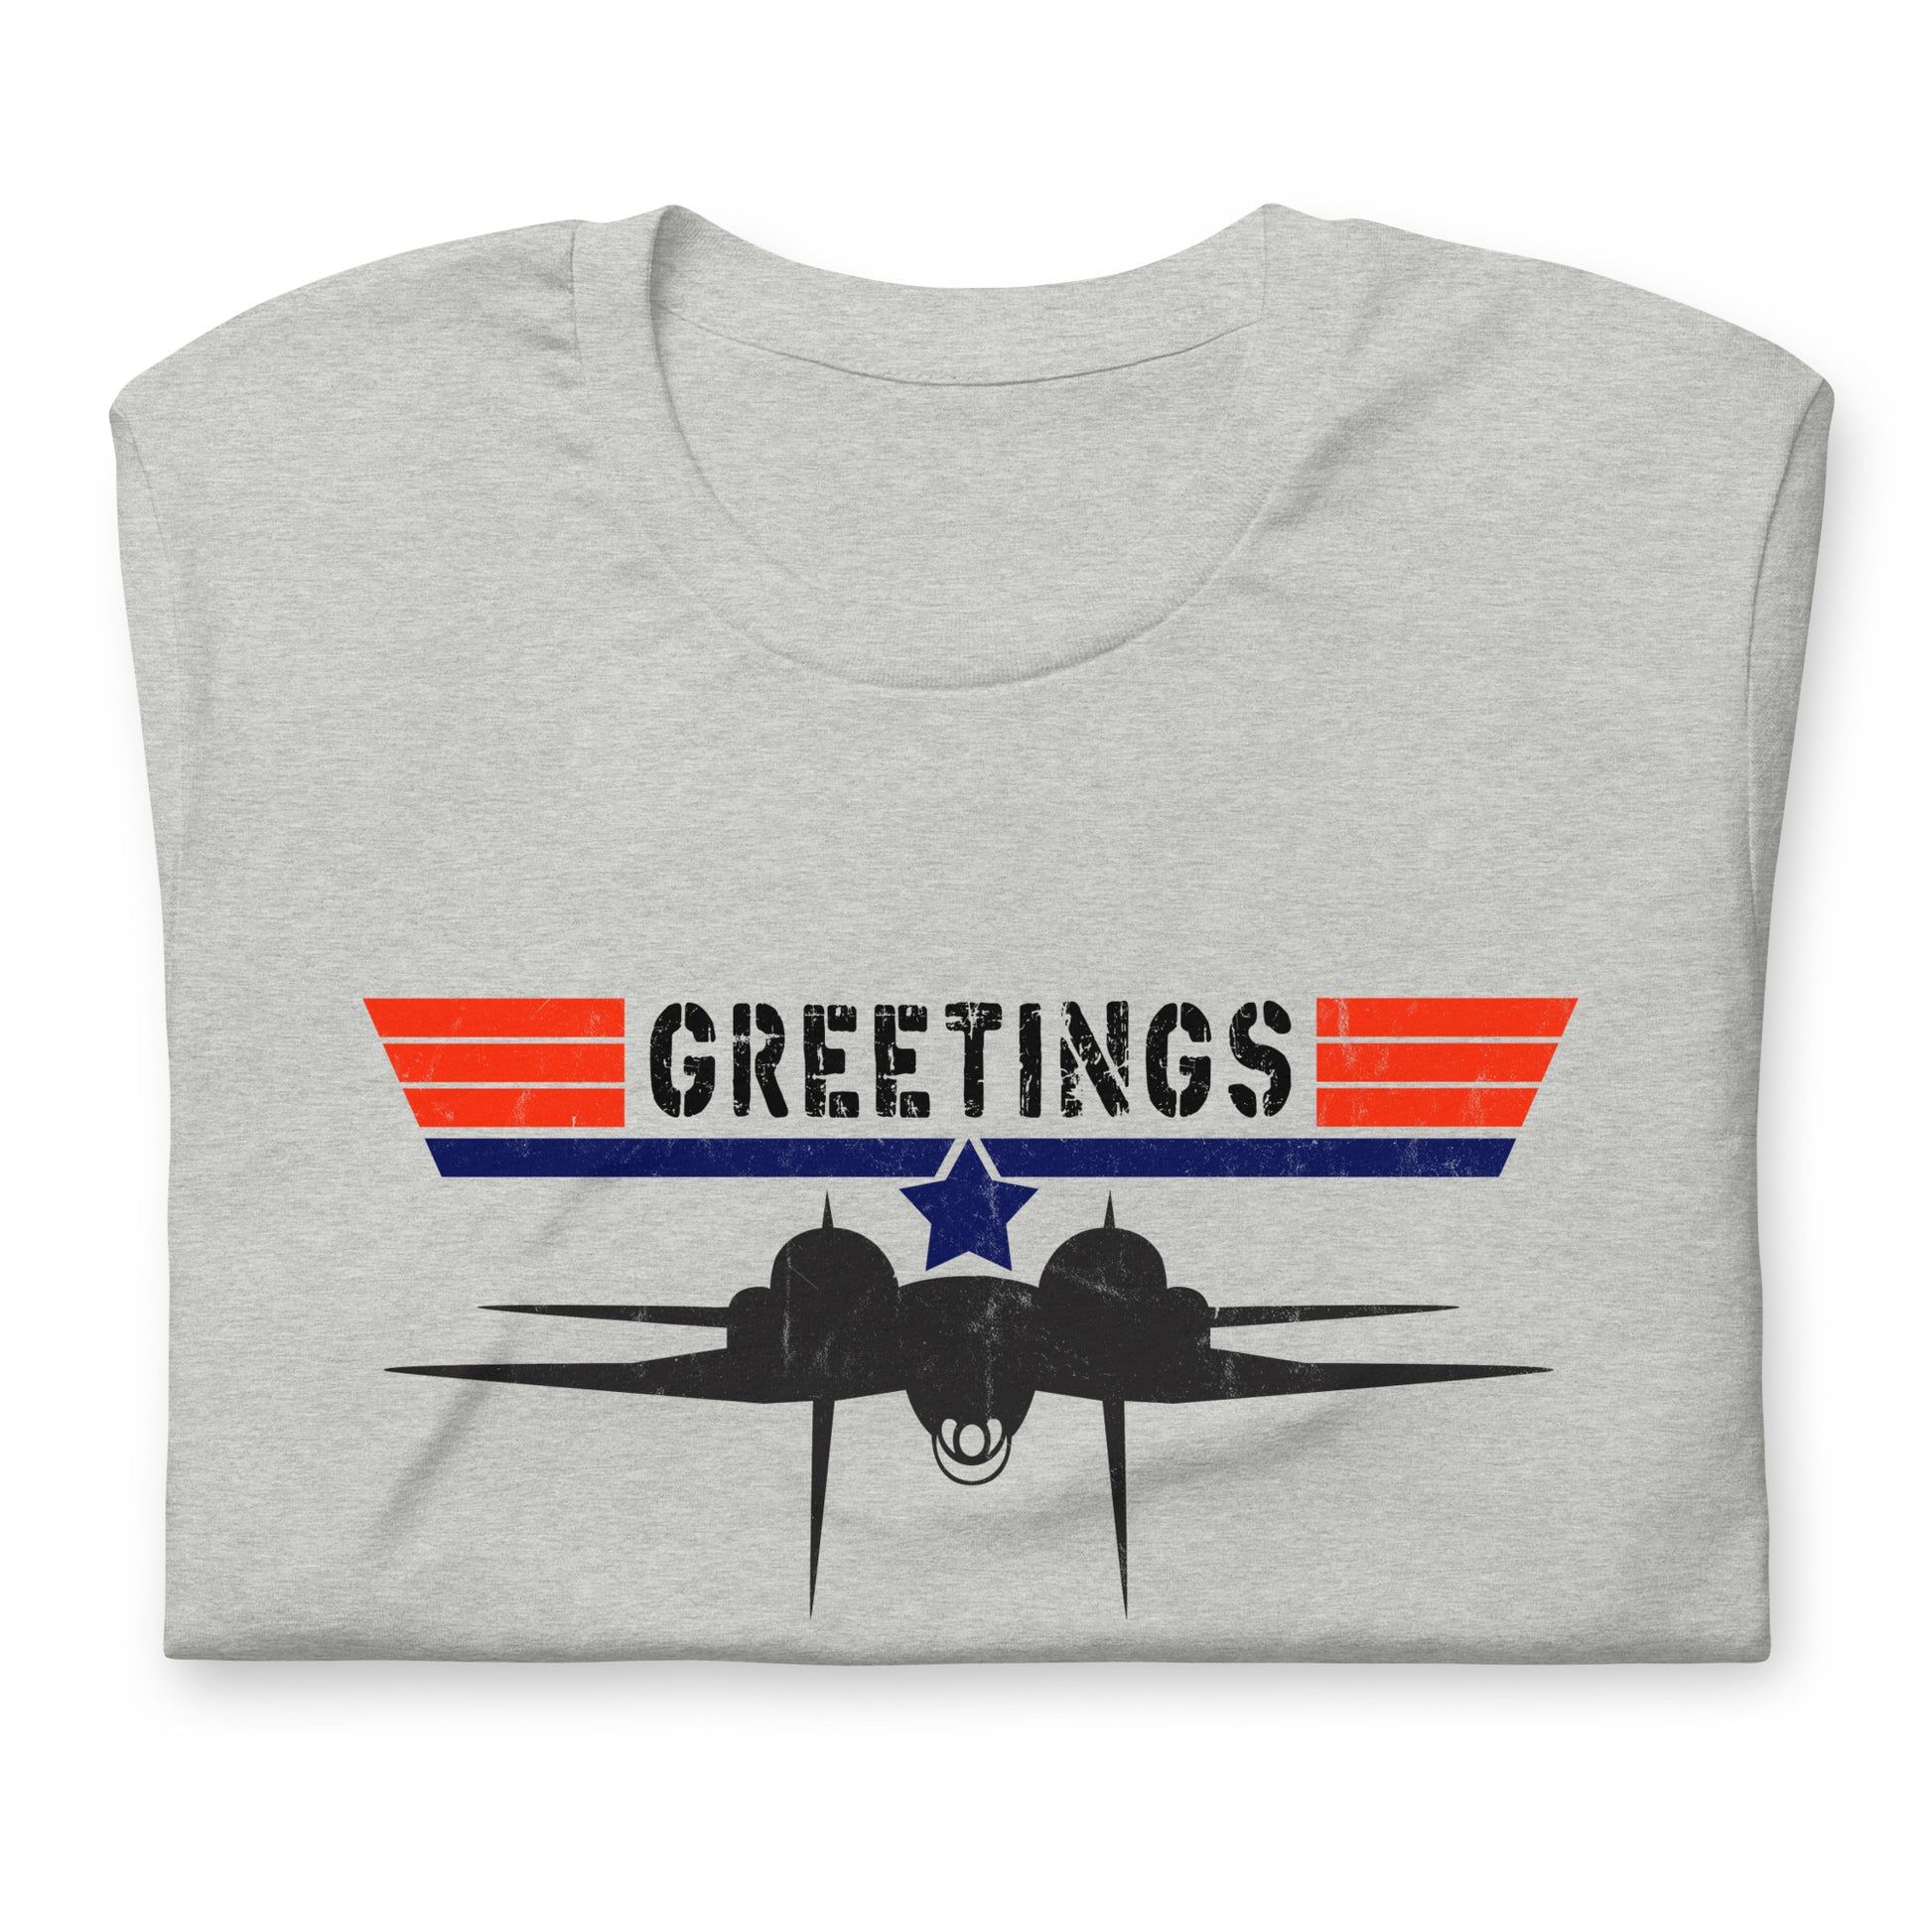 "Greetings" F-14 T-shirt